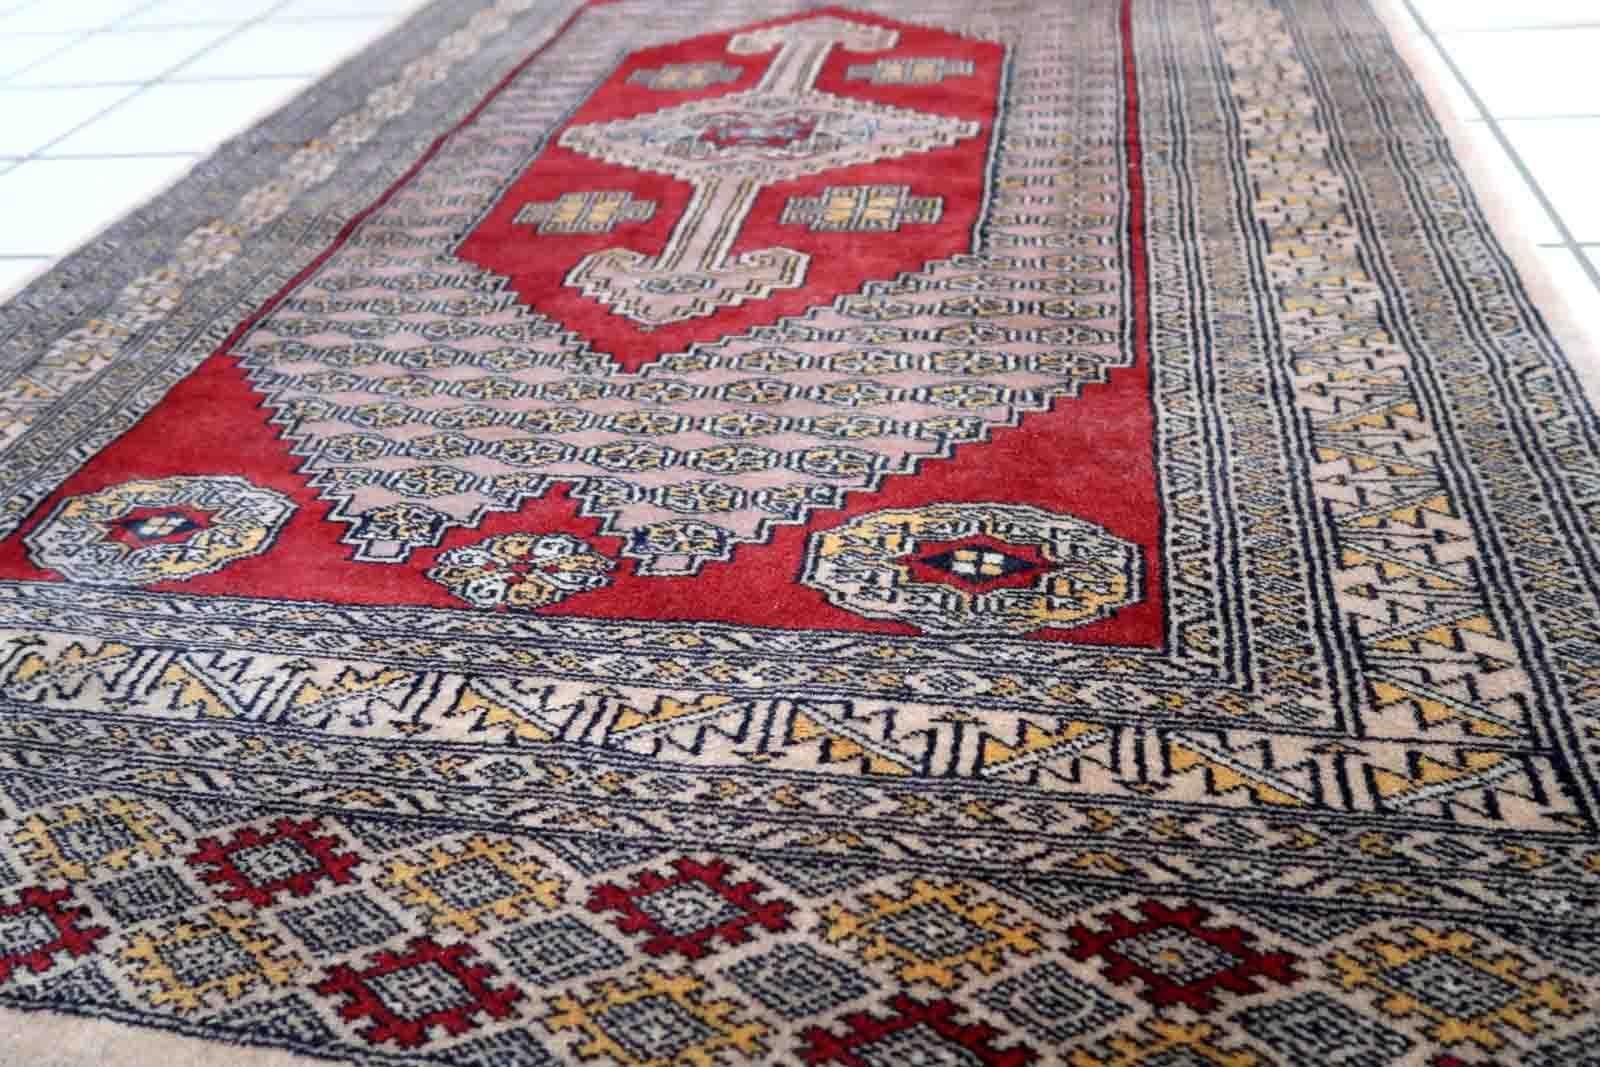 Handgefertigter usbekischer Buchara-Teppich in ungewöhnlichem Design. Der Teppich stammt aus dem Ende des 20. Jahrhunderts. Es befindet sich in einem guten Originalzustand.

-zustand: original gut,

-etwa: 1970er Jahre,

-größe: 3,2' x 5,1'